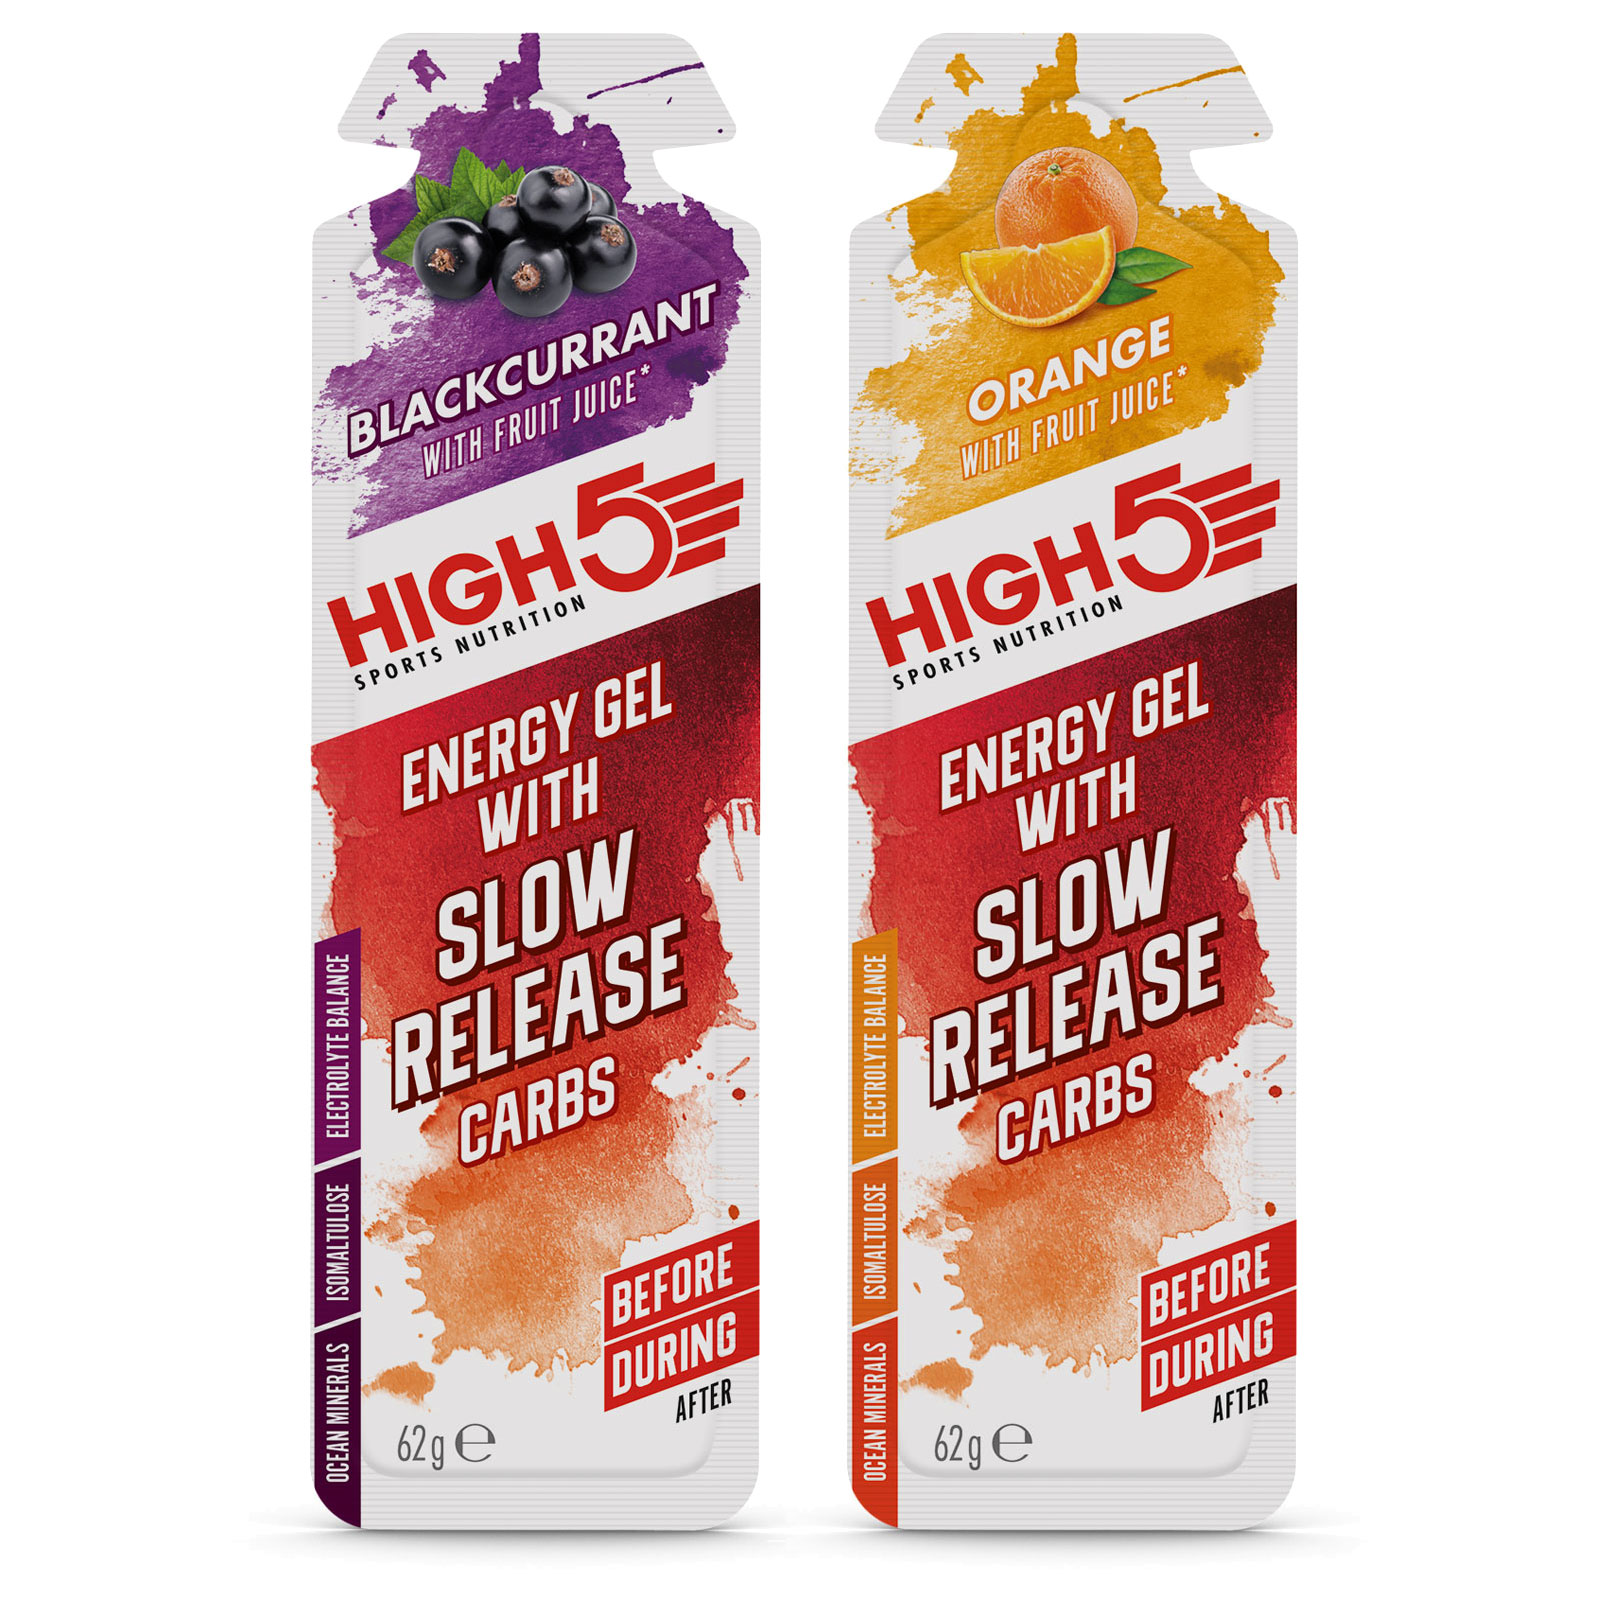 Produktbild von High5 Energy Gel with Slow Release Carbs - Kohlenhydrat-Gel - 62g